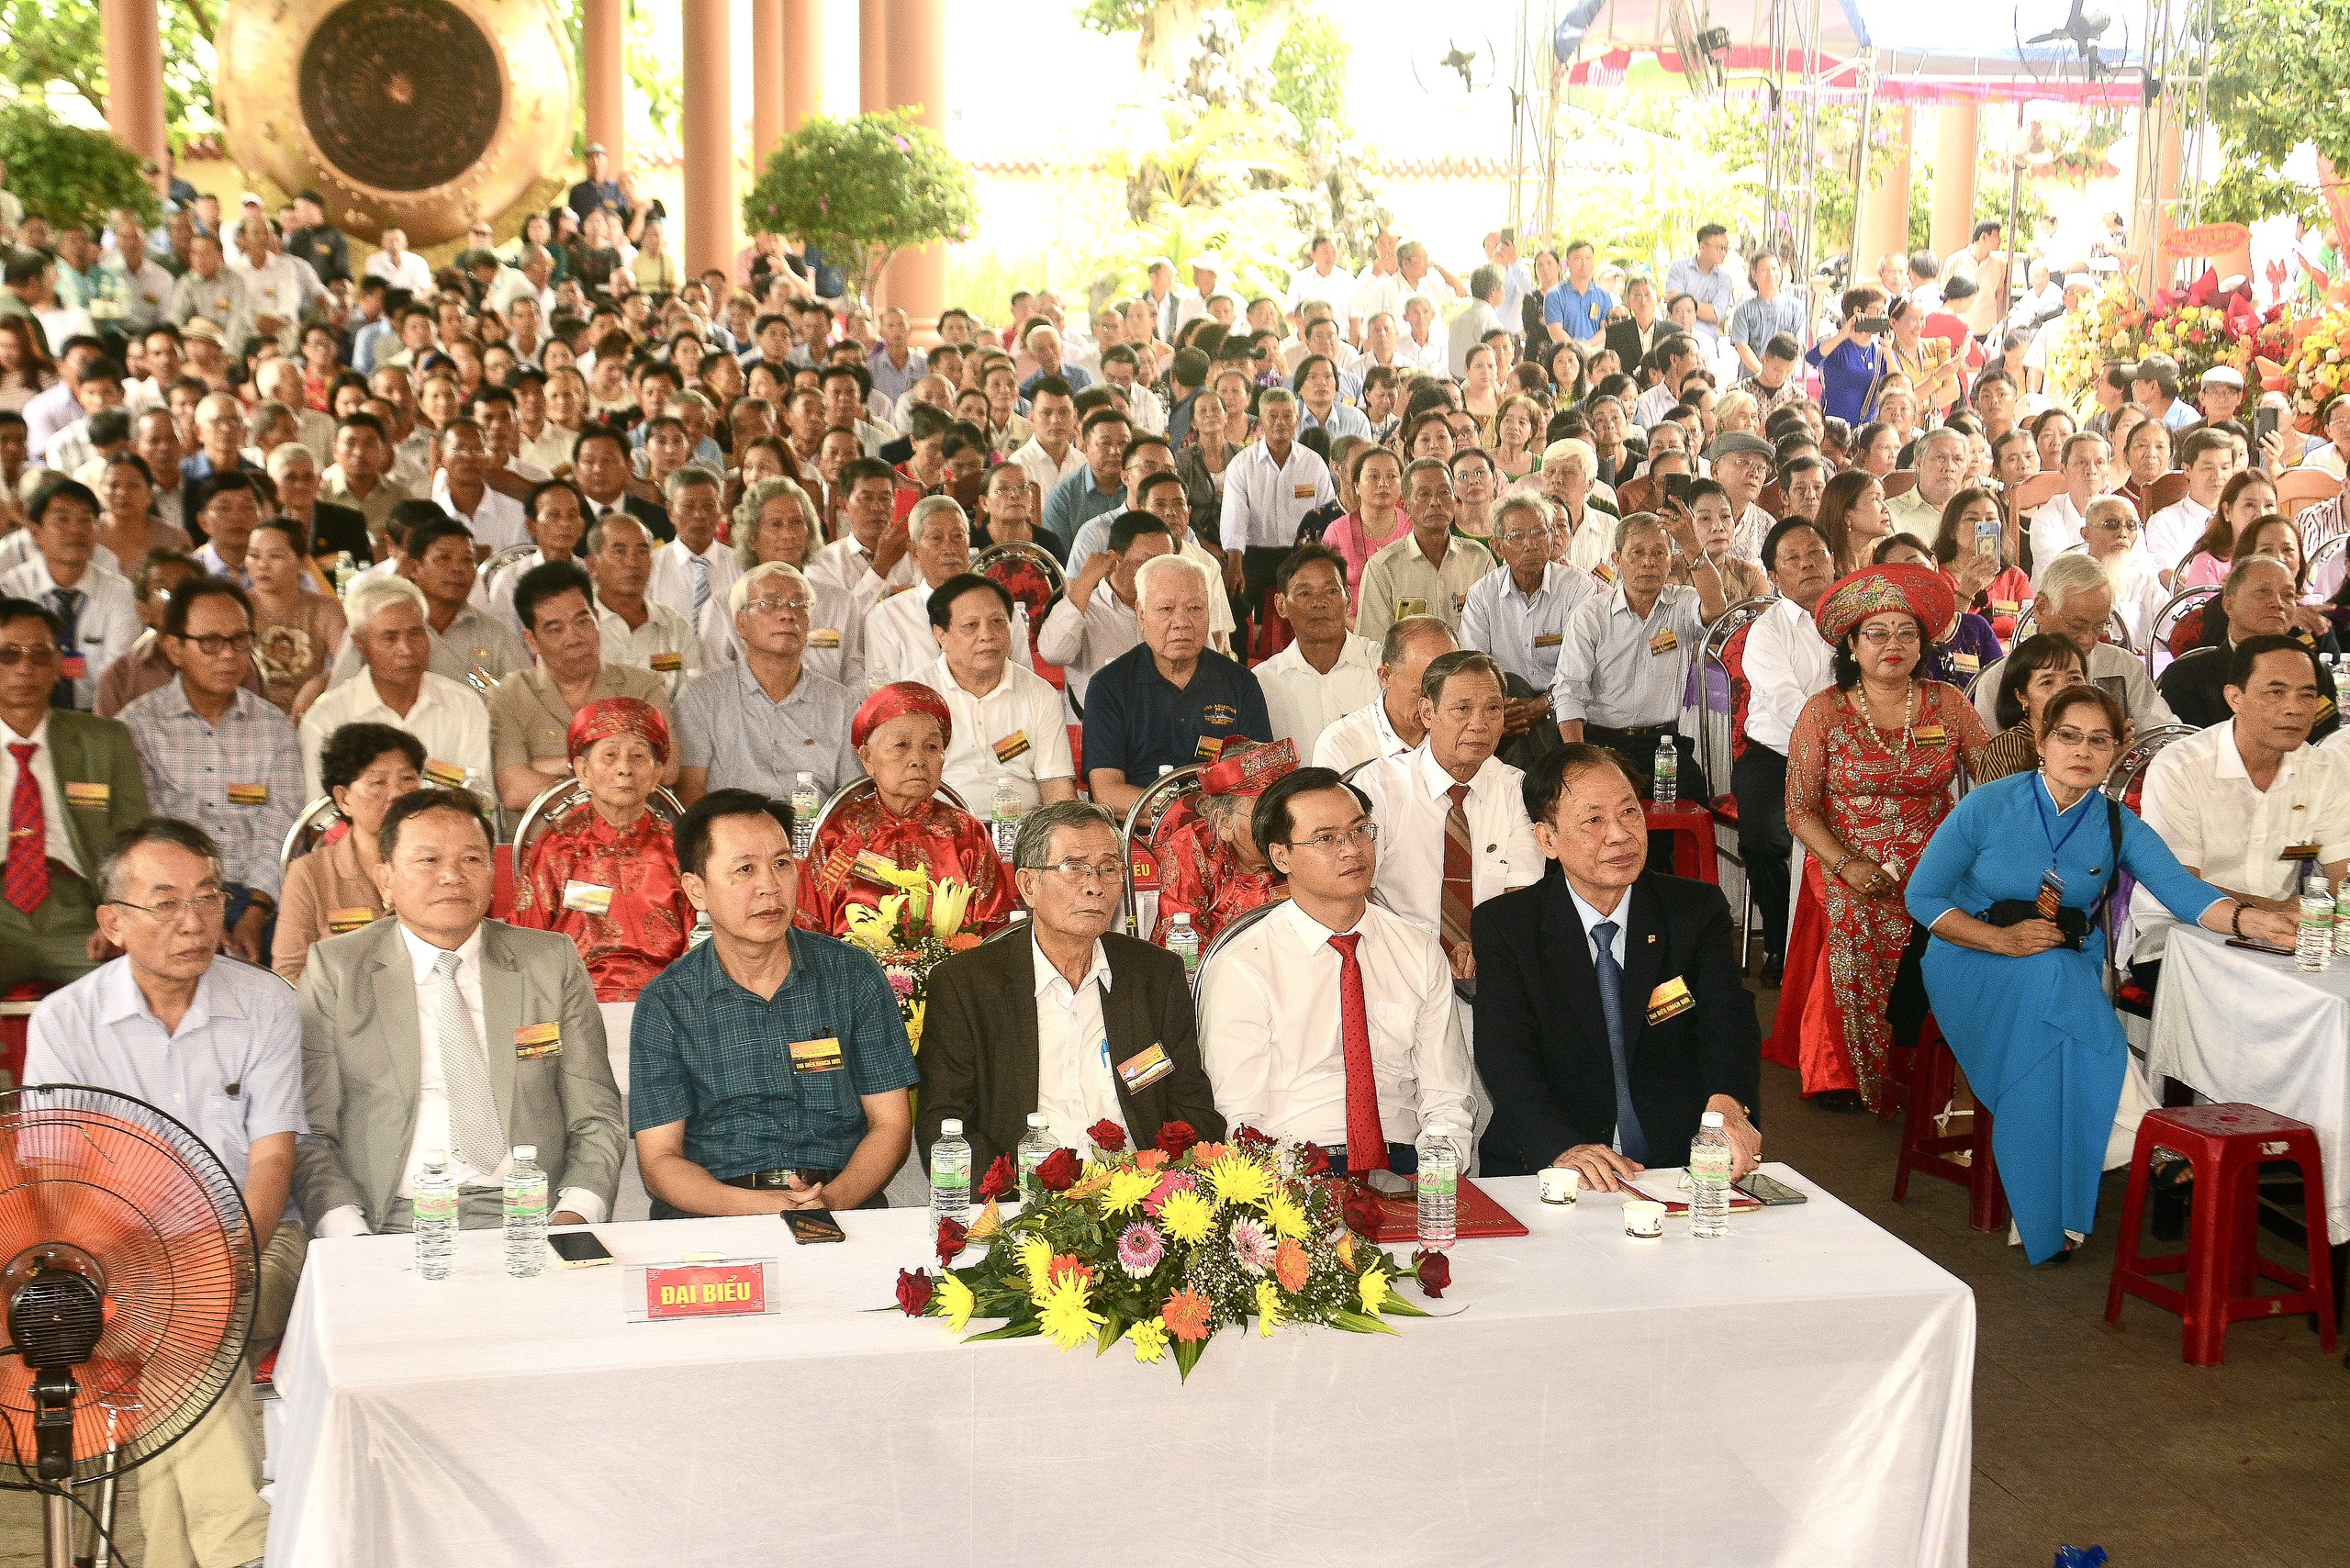 Sự kiện Hiệp kỵ tiền nhân họ Đặng quy tụ đông đảo lãnh đạo Hội đồng họ Đặng Việt Nam, các quý vị đại biểu, khách quý đại diện các dòng họ cùng gần 1.000 con cháu họ Đặng toàn quốc về tham dự.